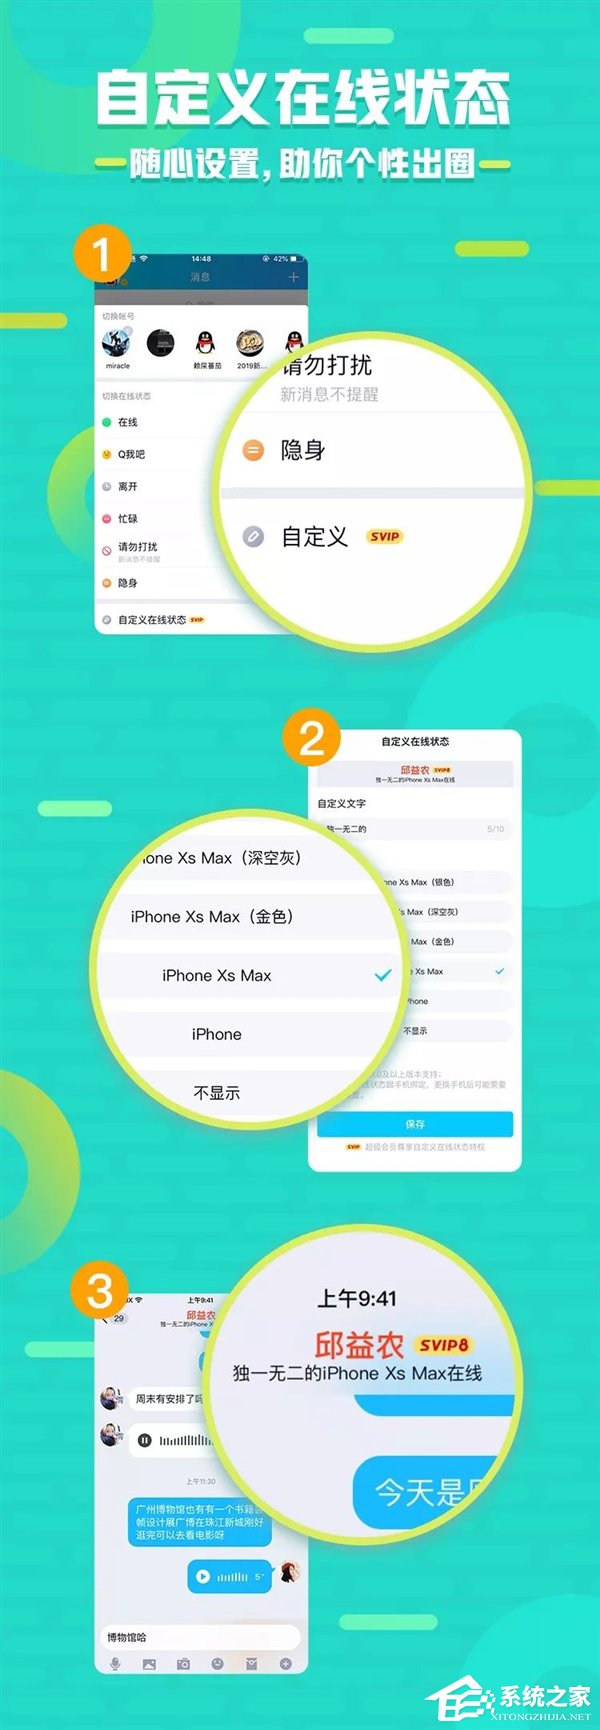 官方公布手机QQ新特权/功能/玩法